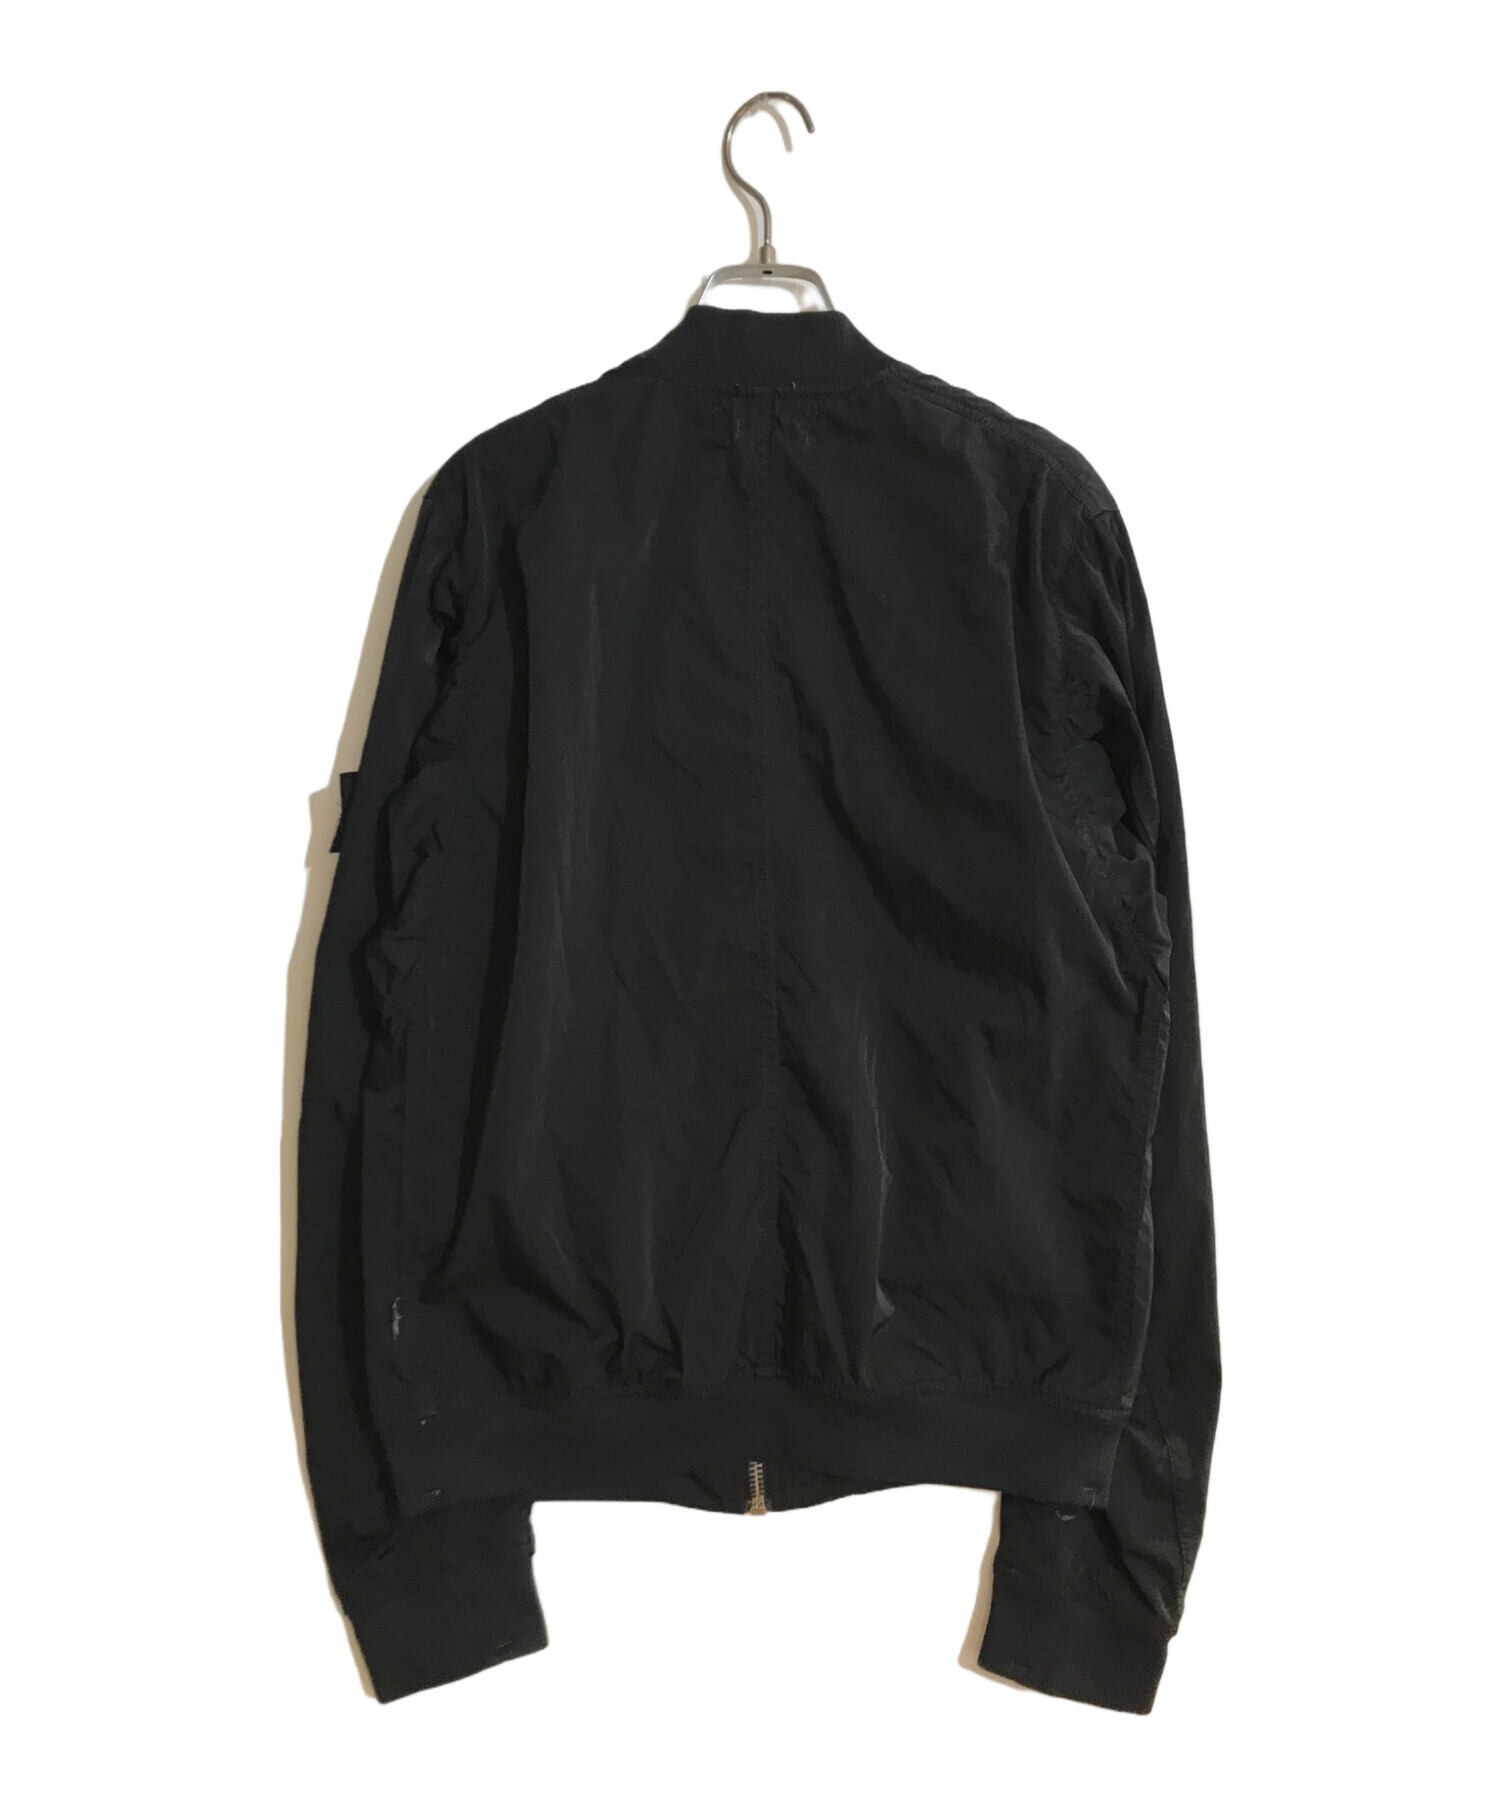 STONE ISLAND (ストーンアイランド) ボンバージャケット ブラック サイズ:M